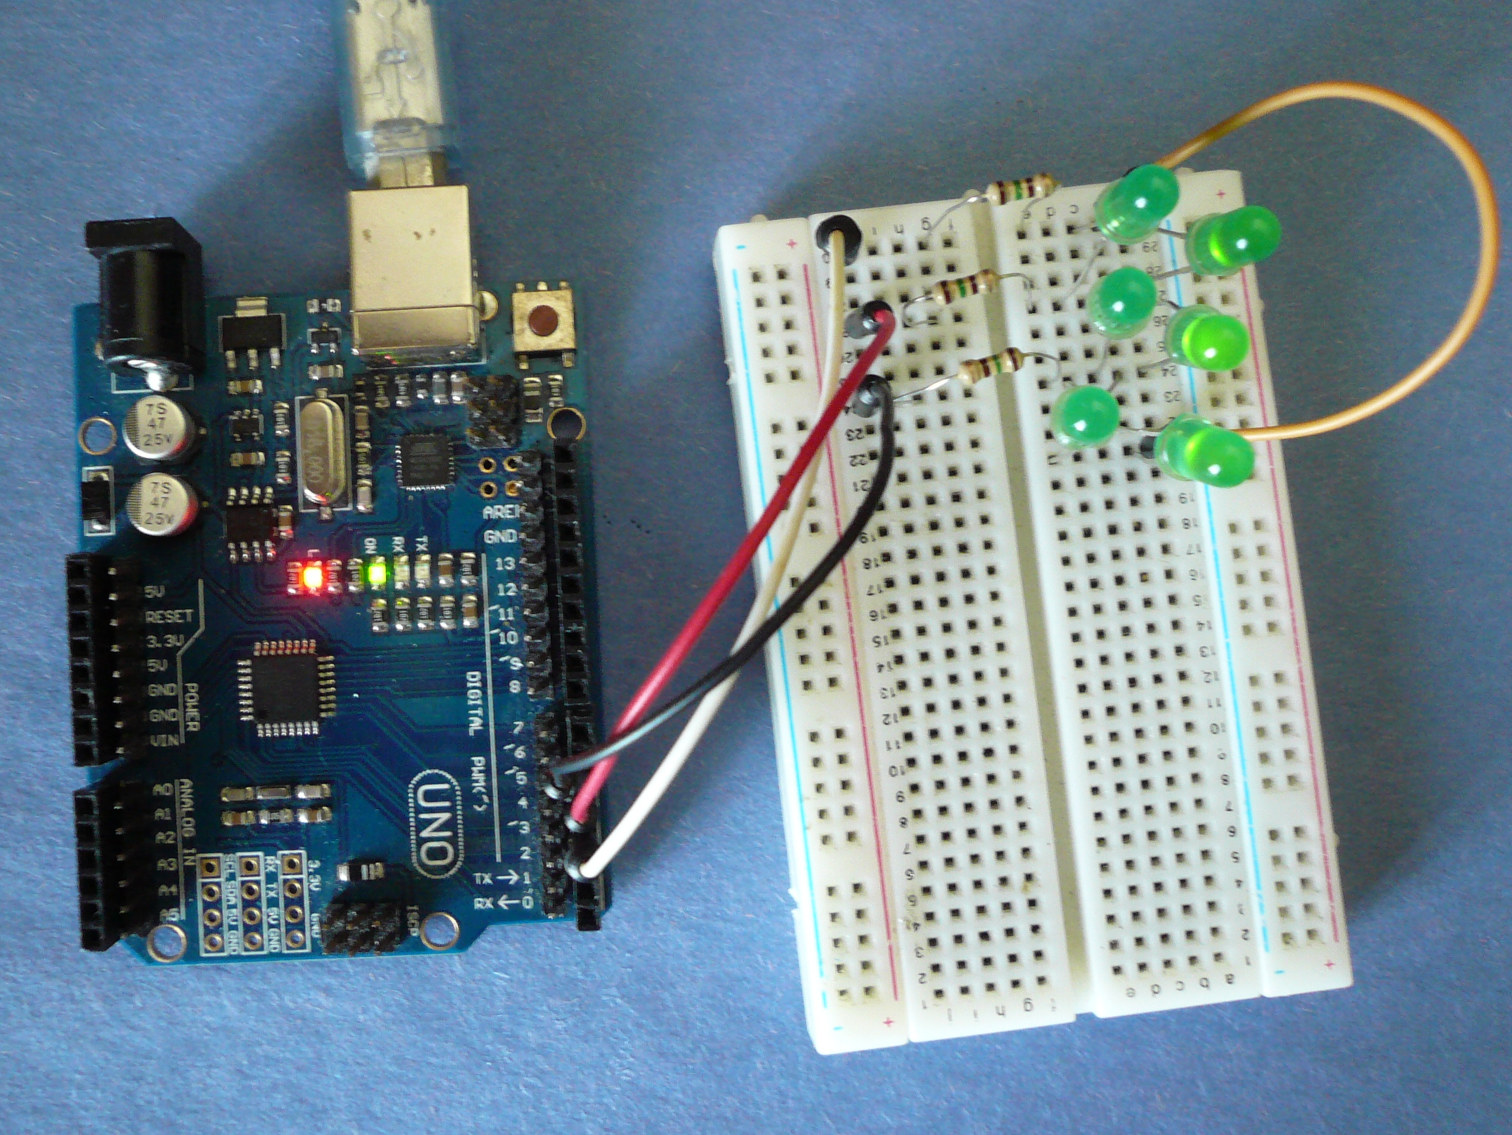 Clignoter deux LEDs avec Arduino